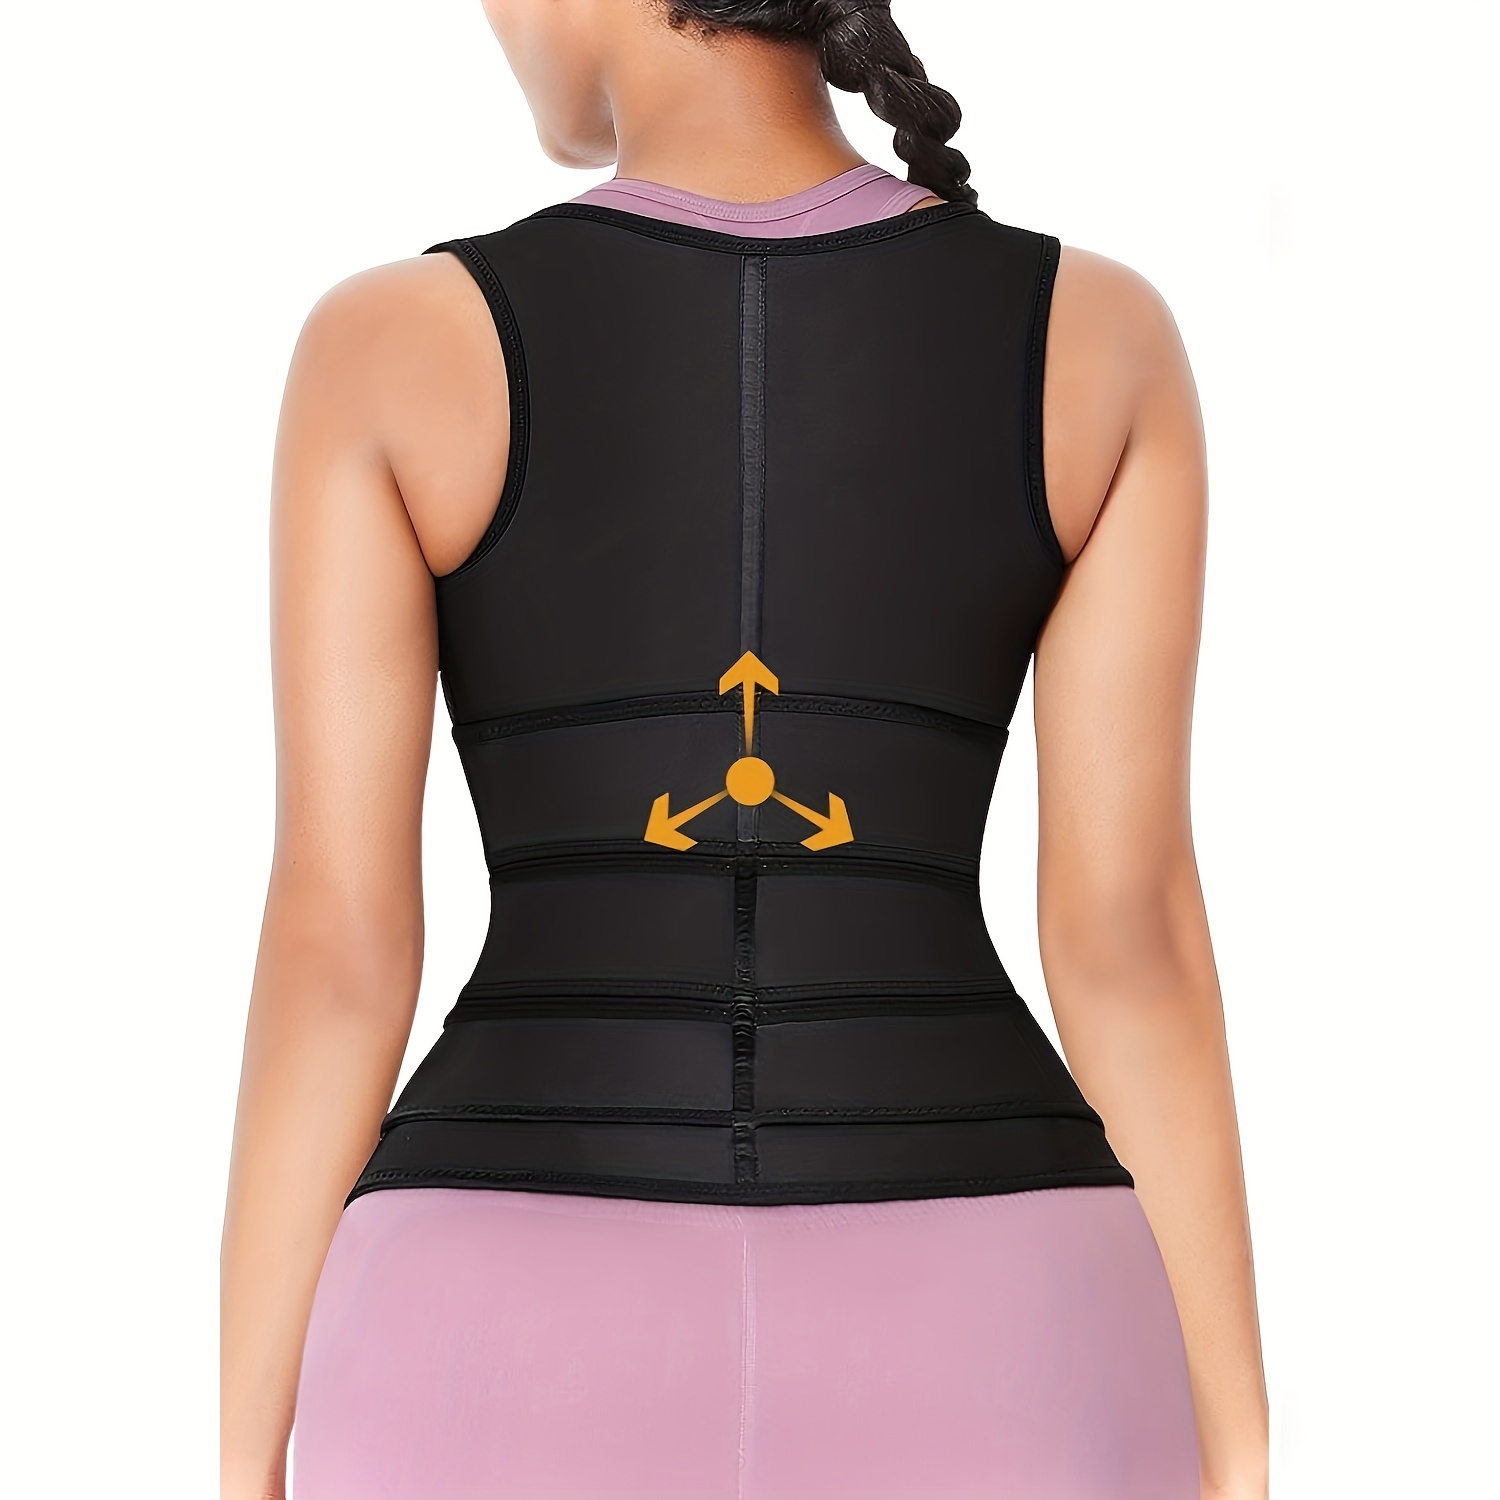 GetUSCart- Women Waist Trainer Corset, Zipper Vest Body Shaper